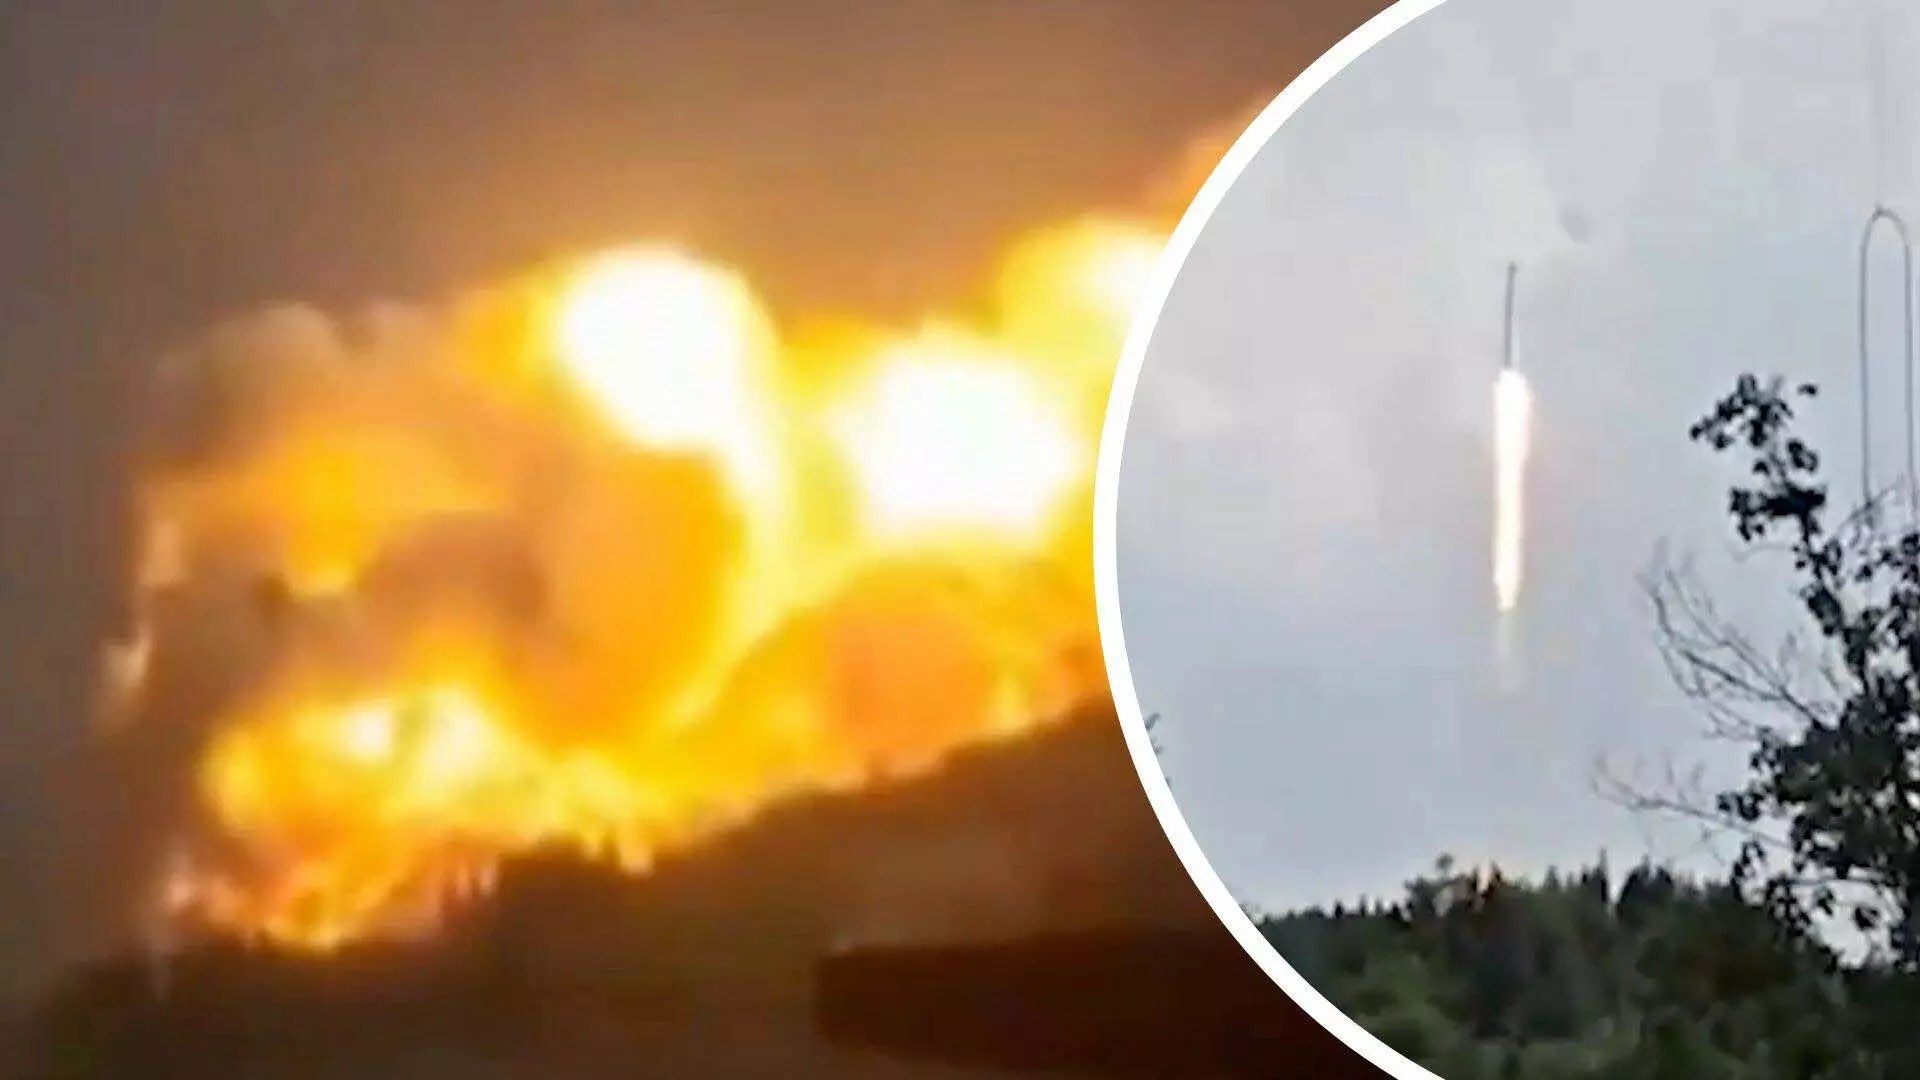 Chinese rocket crash: रॉकेट प्रारंभिक परीक्षण में उड़ान भरने पर पहाड़ी इलाके हुई दुर्घटनाग्रस्त